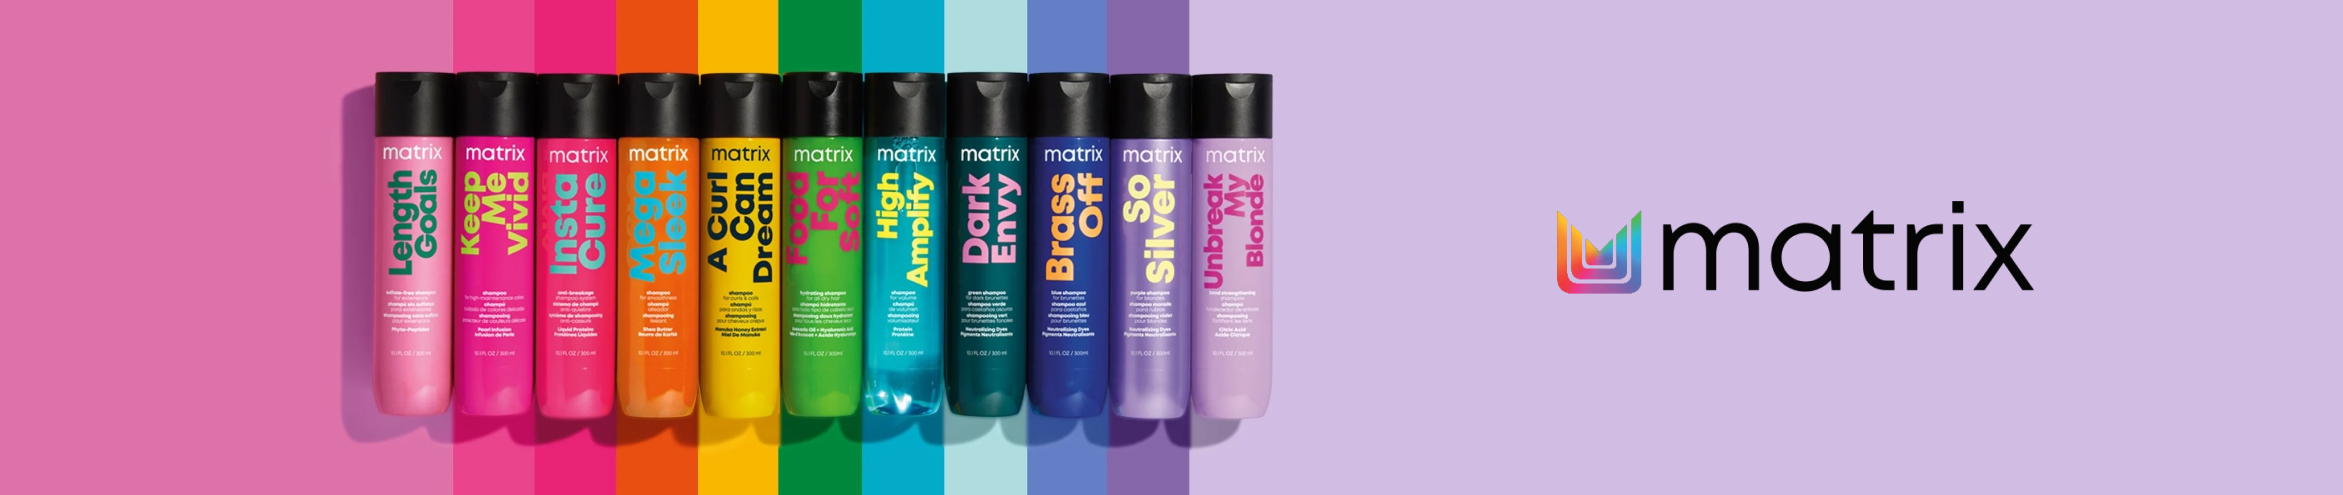 Matrix - Dry Hair Shampoo